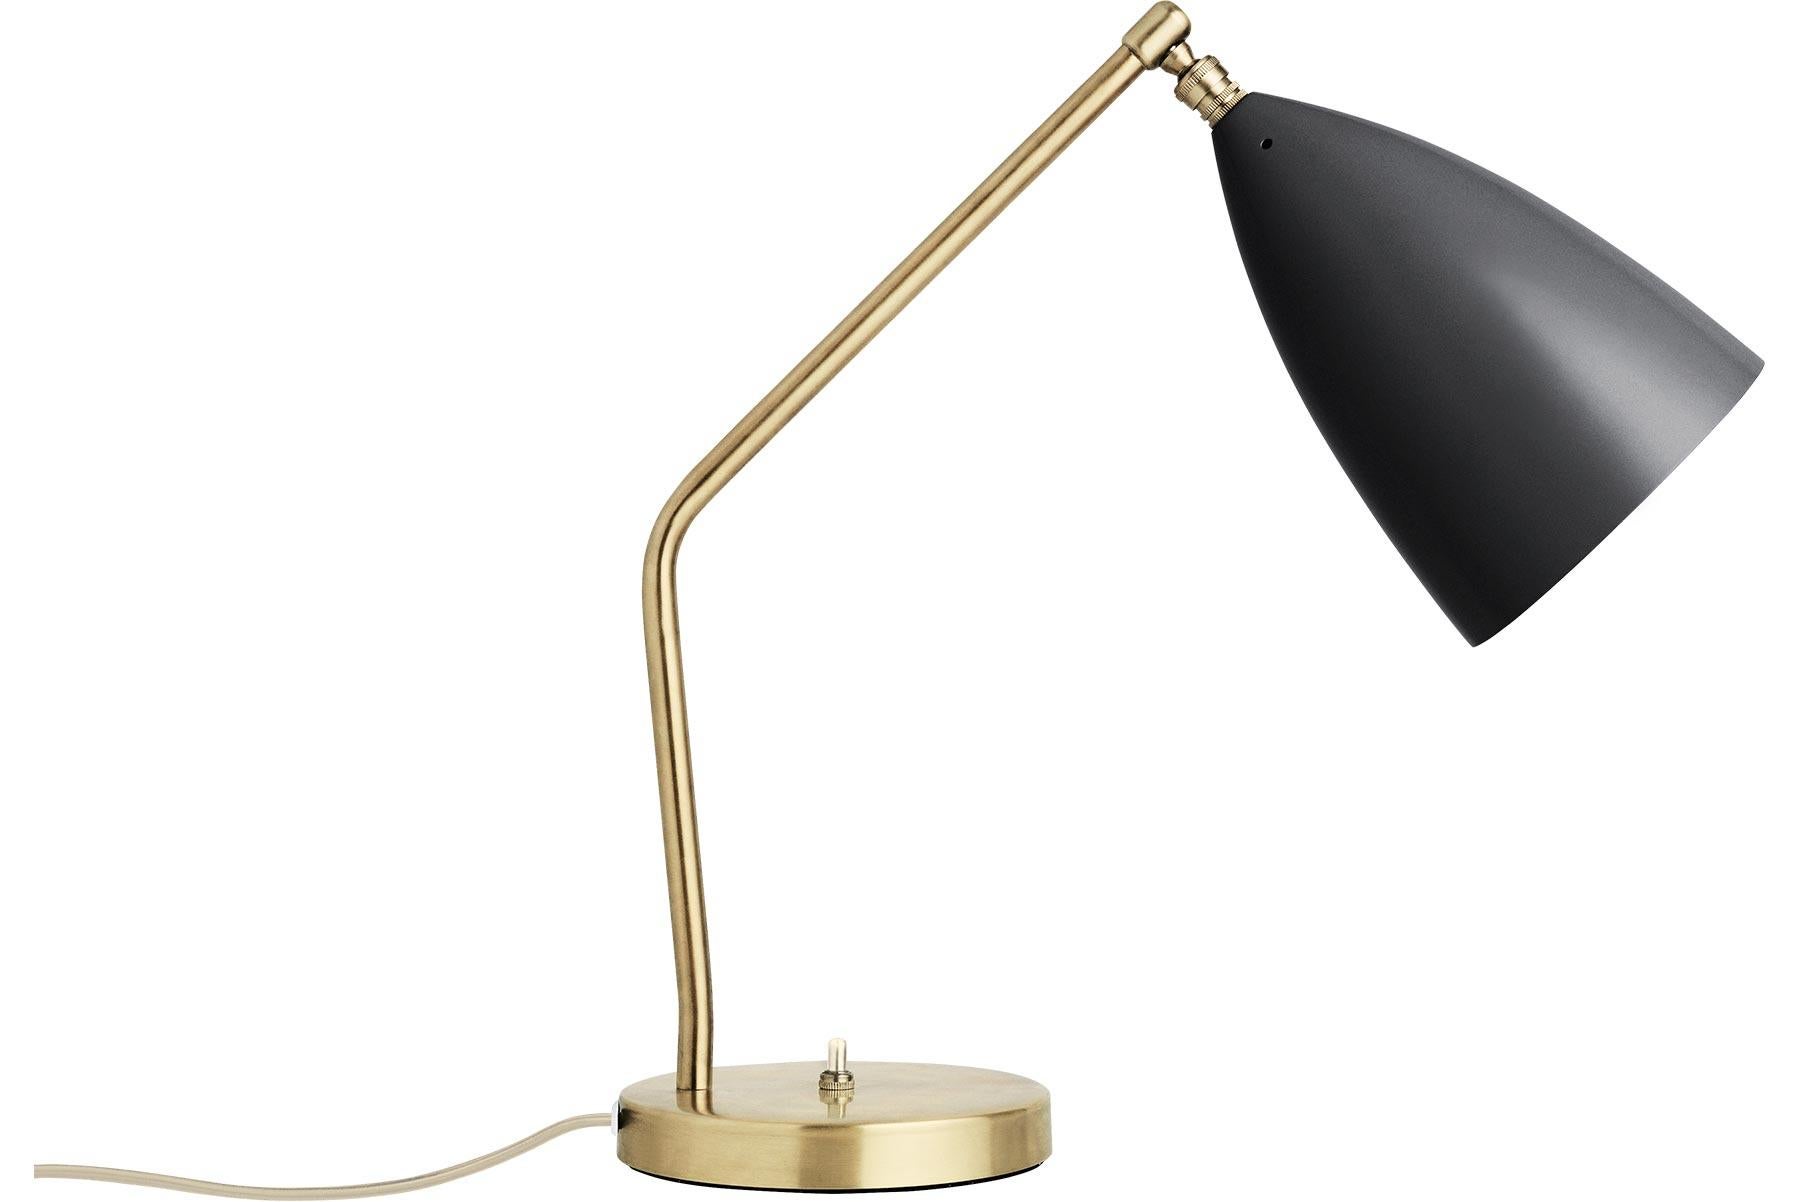 Danish Greta Grossman Grasshopper Table Lamp, Black For Sale